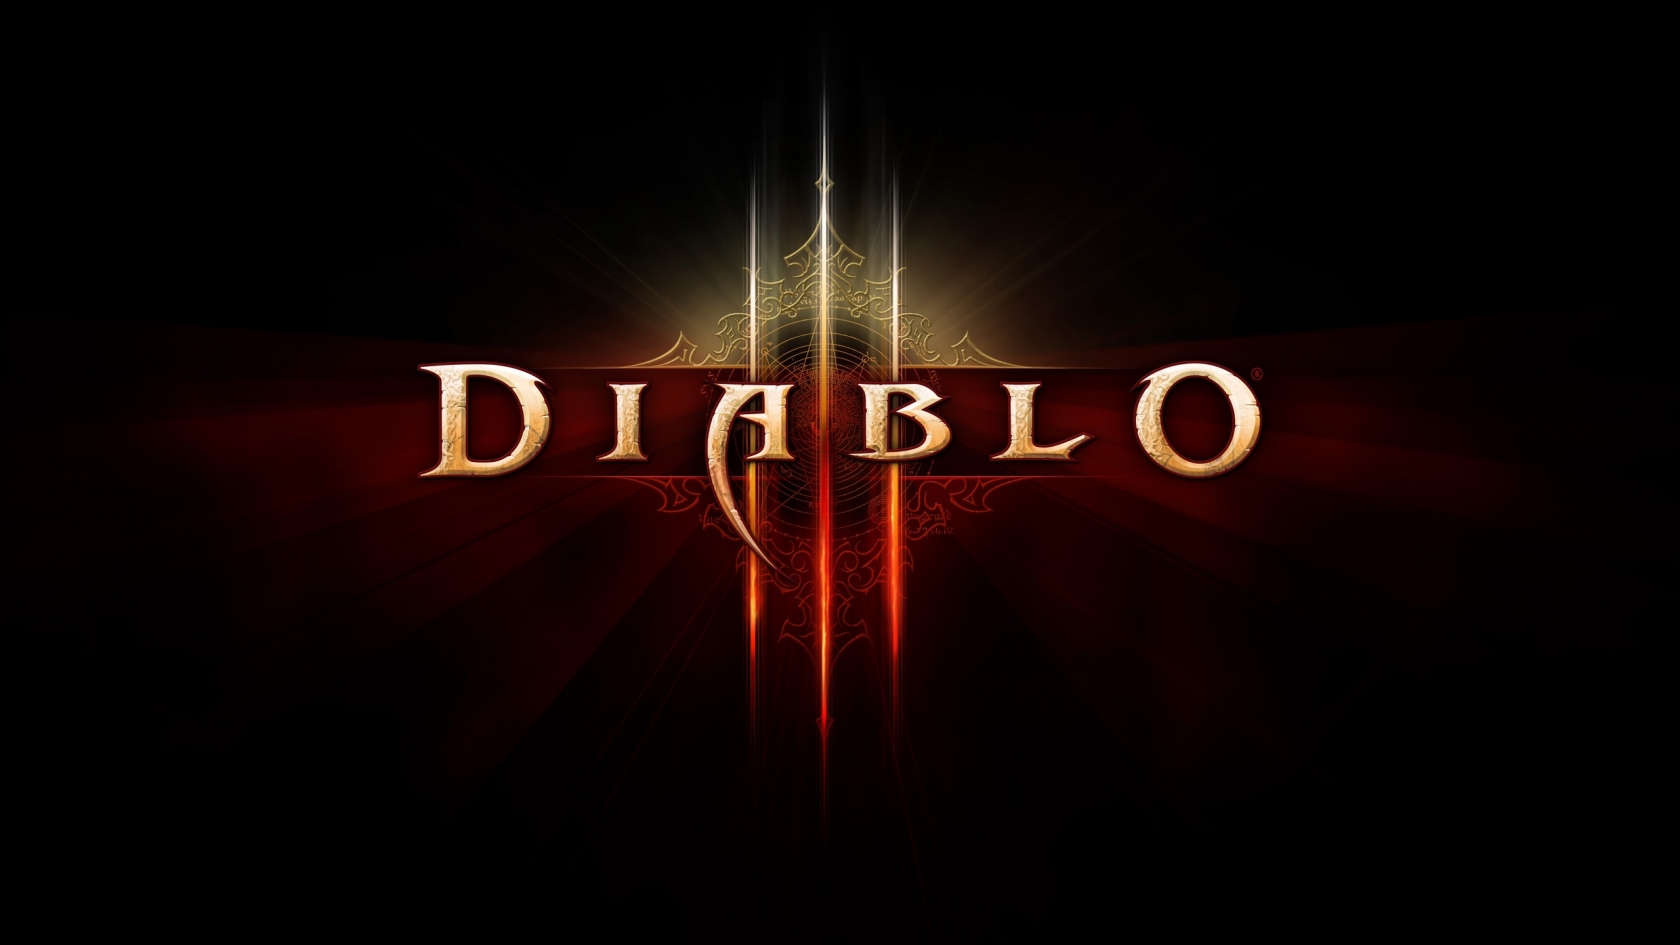 Diablo 3 Logo for 1680 x 945 HDTV resolution